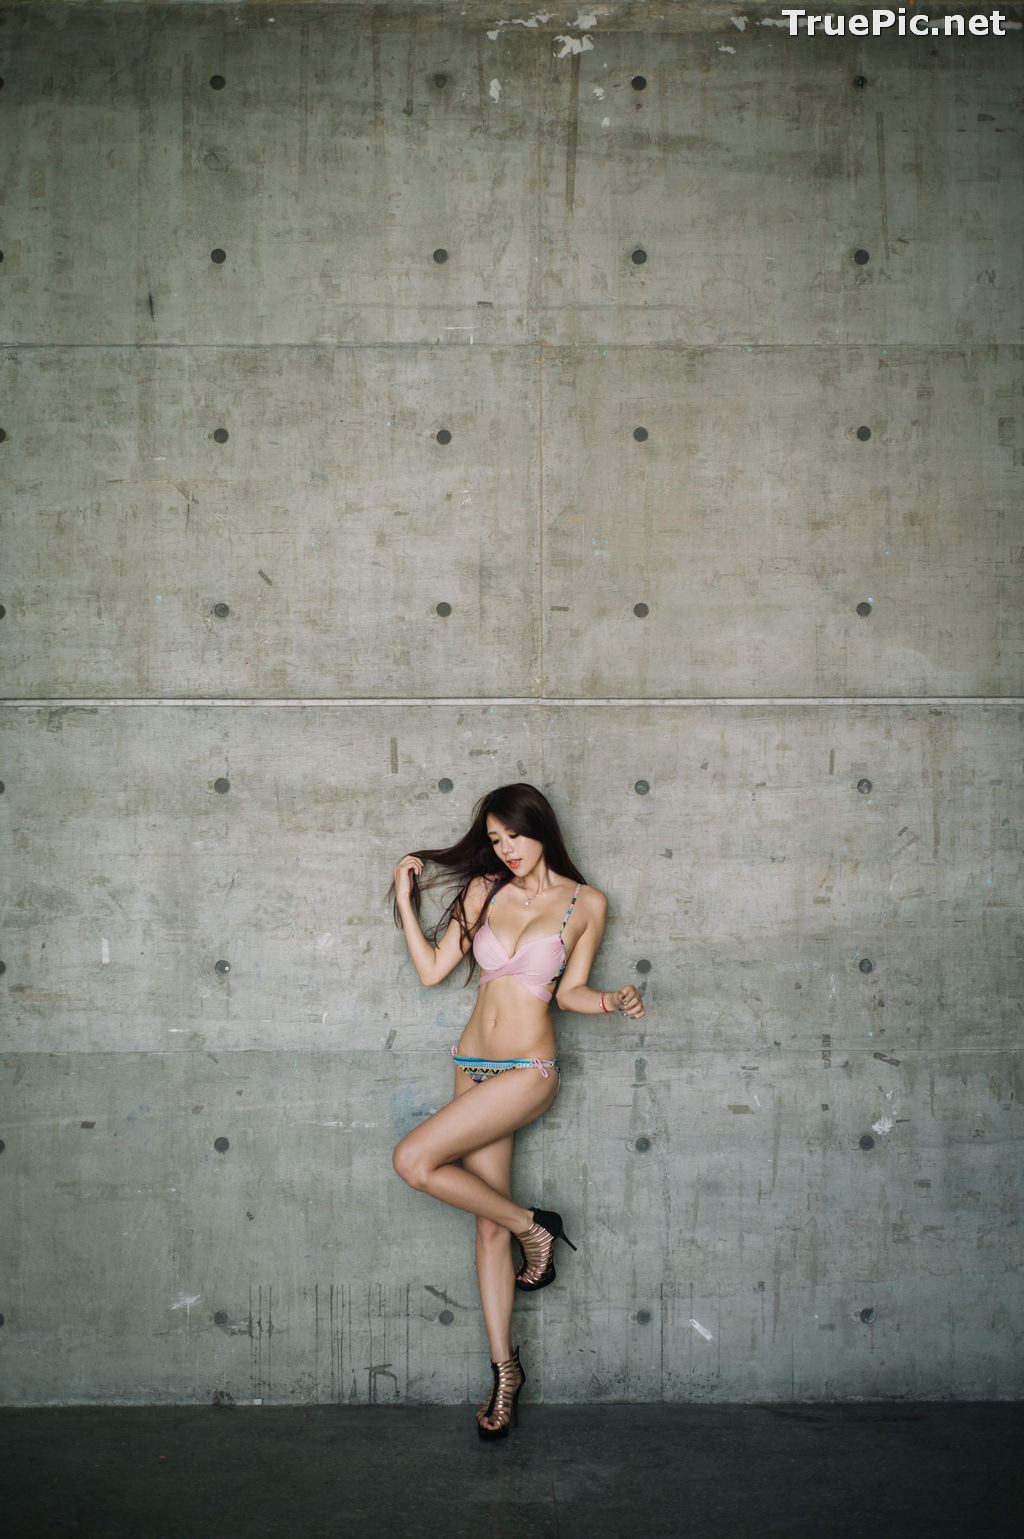 Image Taiwanese Model - 魏曼曼 (Amanda) - Bikini In The Room - TruePic.net - Picture-52